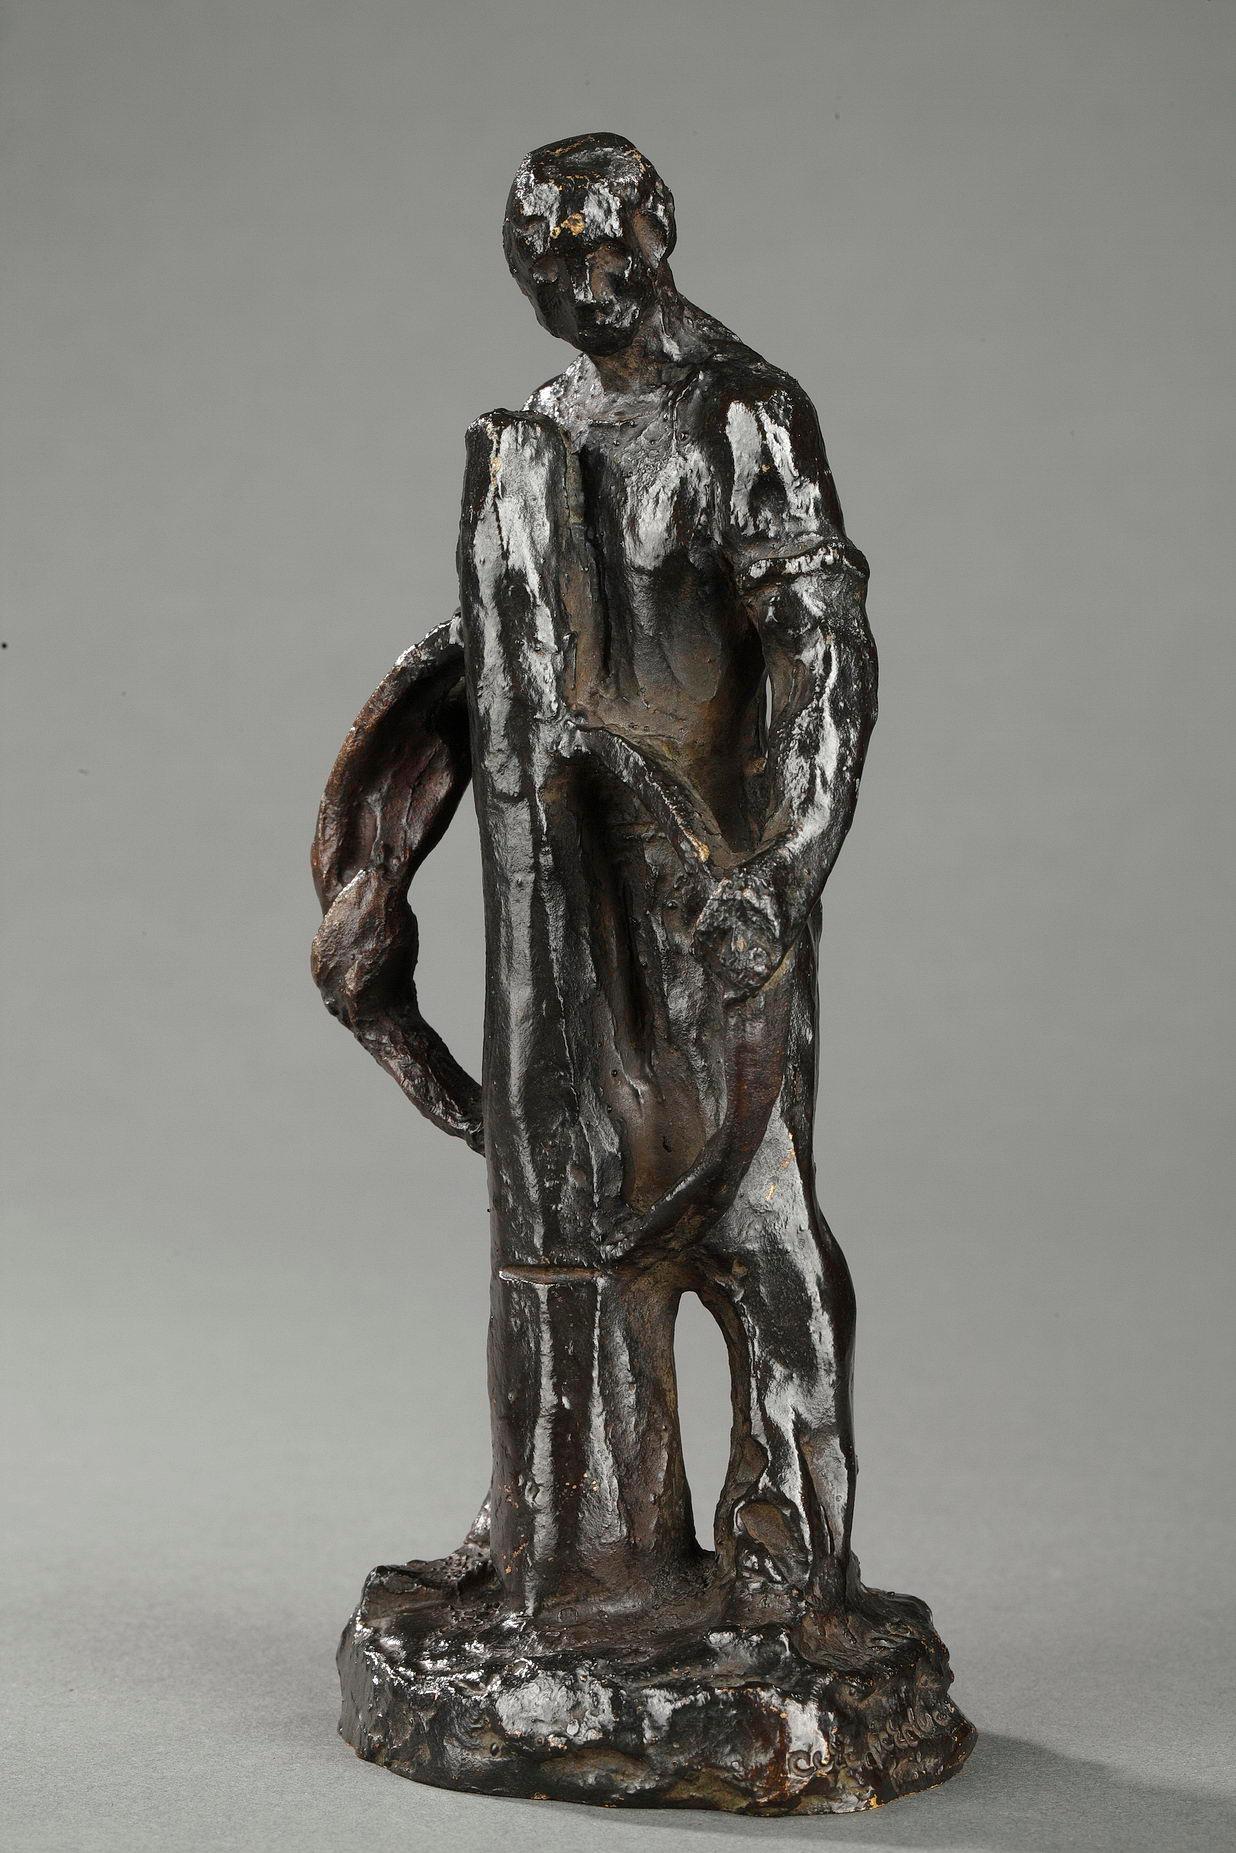 Paver - Sculpture by Aimé-Jules Dalou